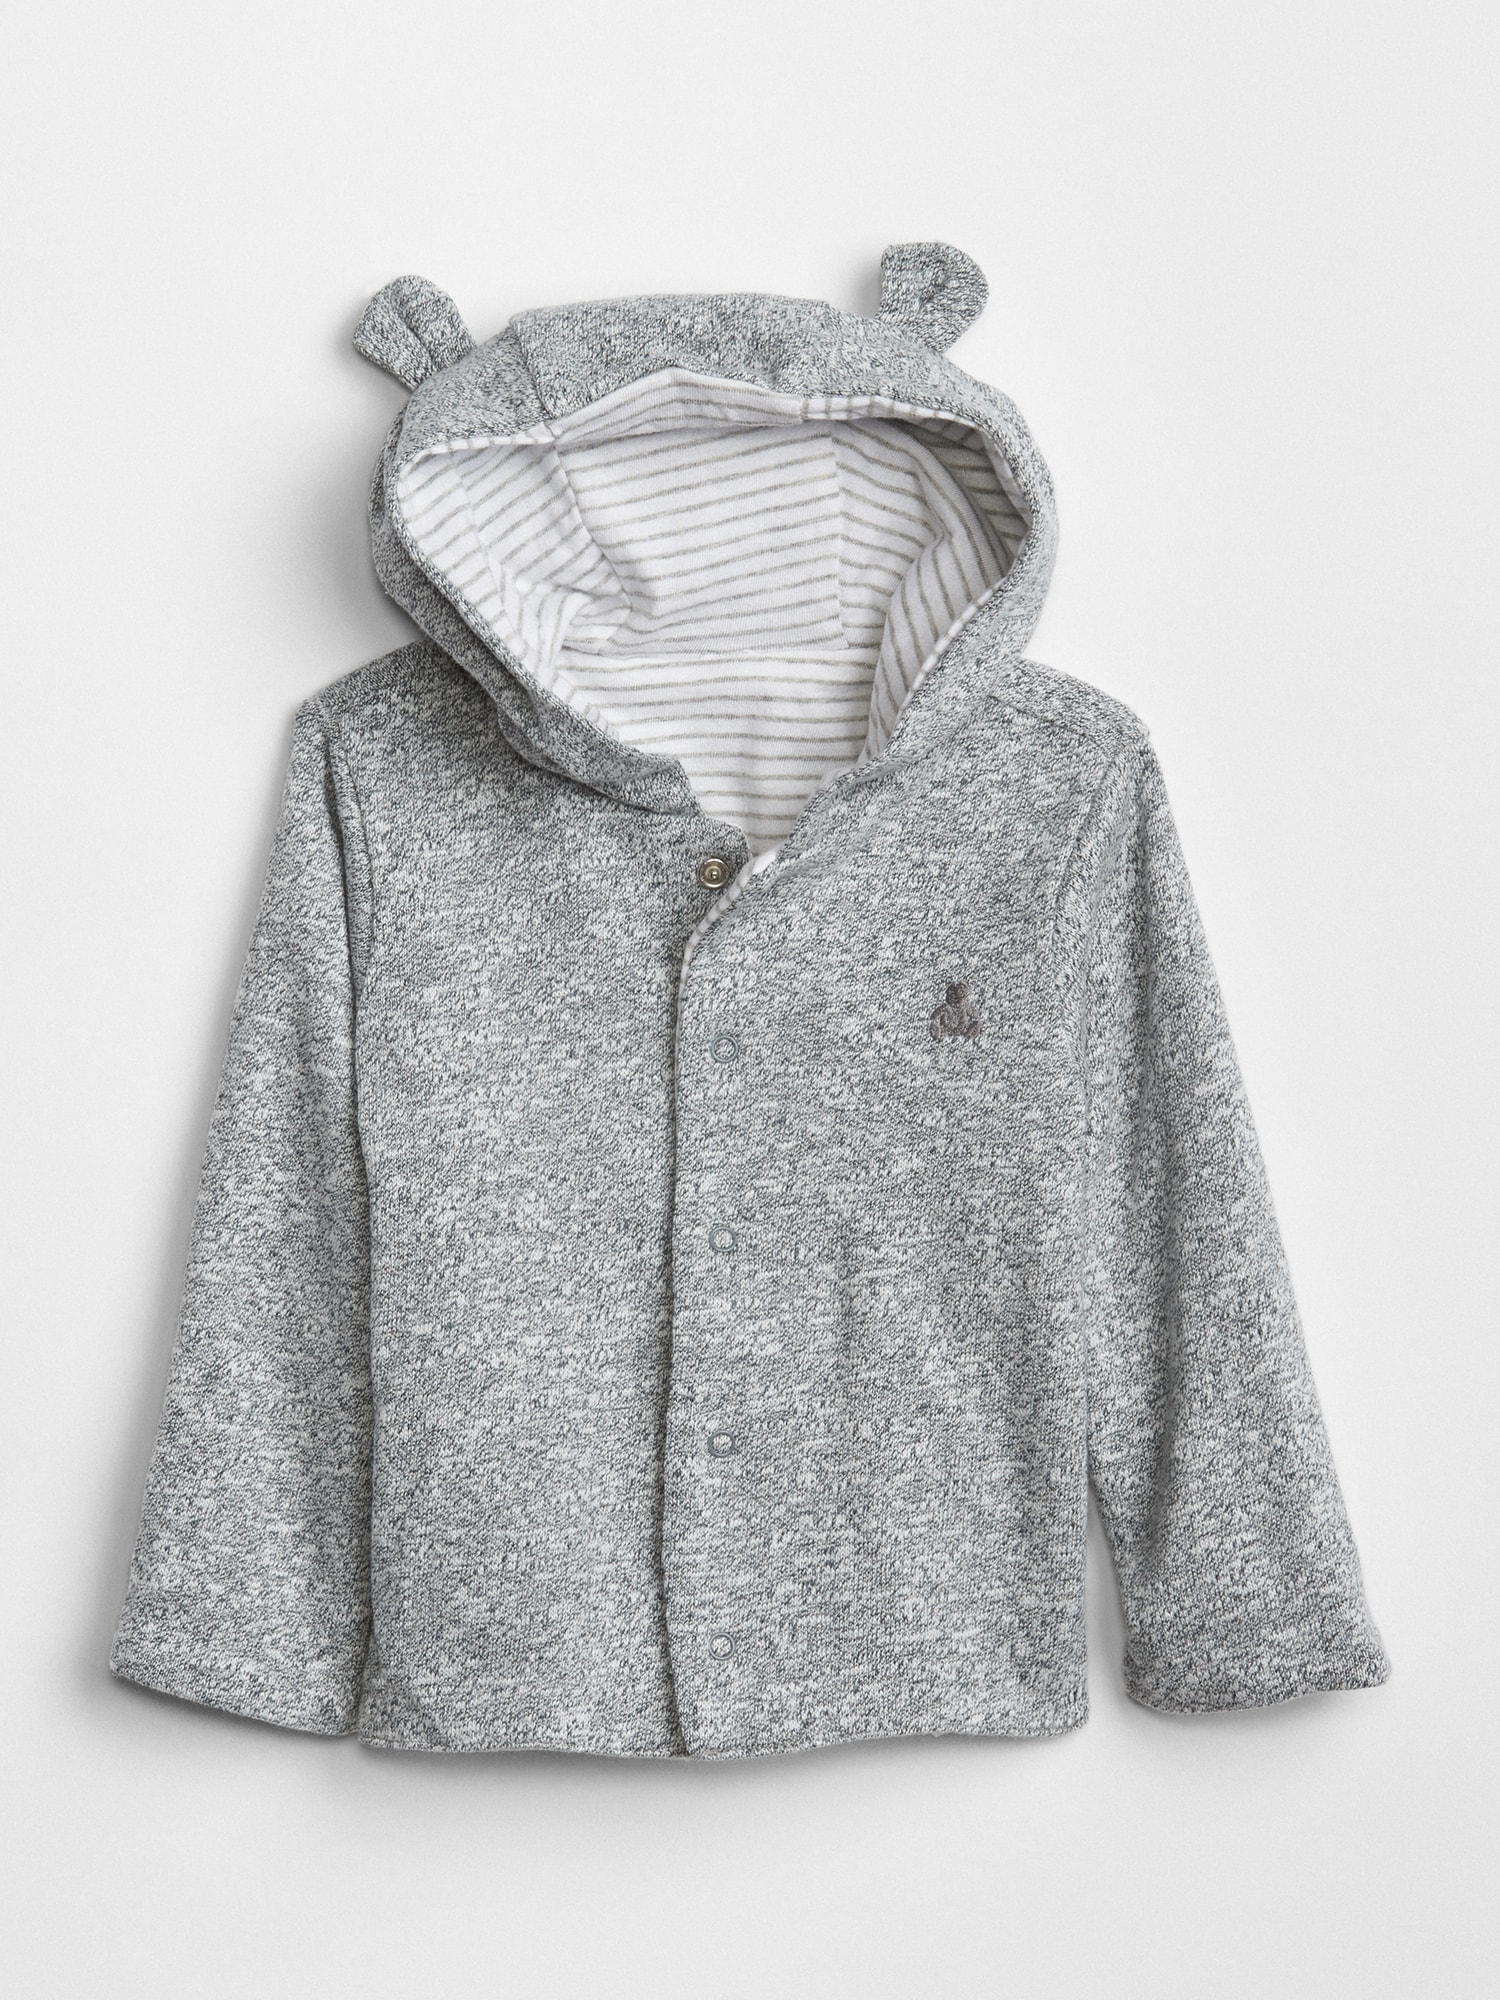 Gap Kids' Baby Favorite Reversible Bear Hoodie Sweatshirt In Gray